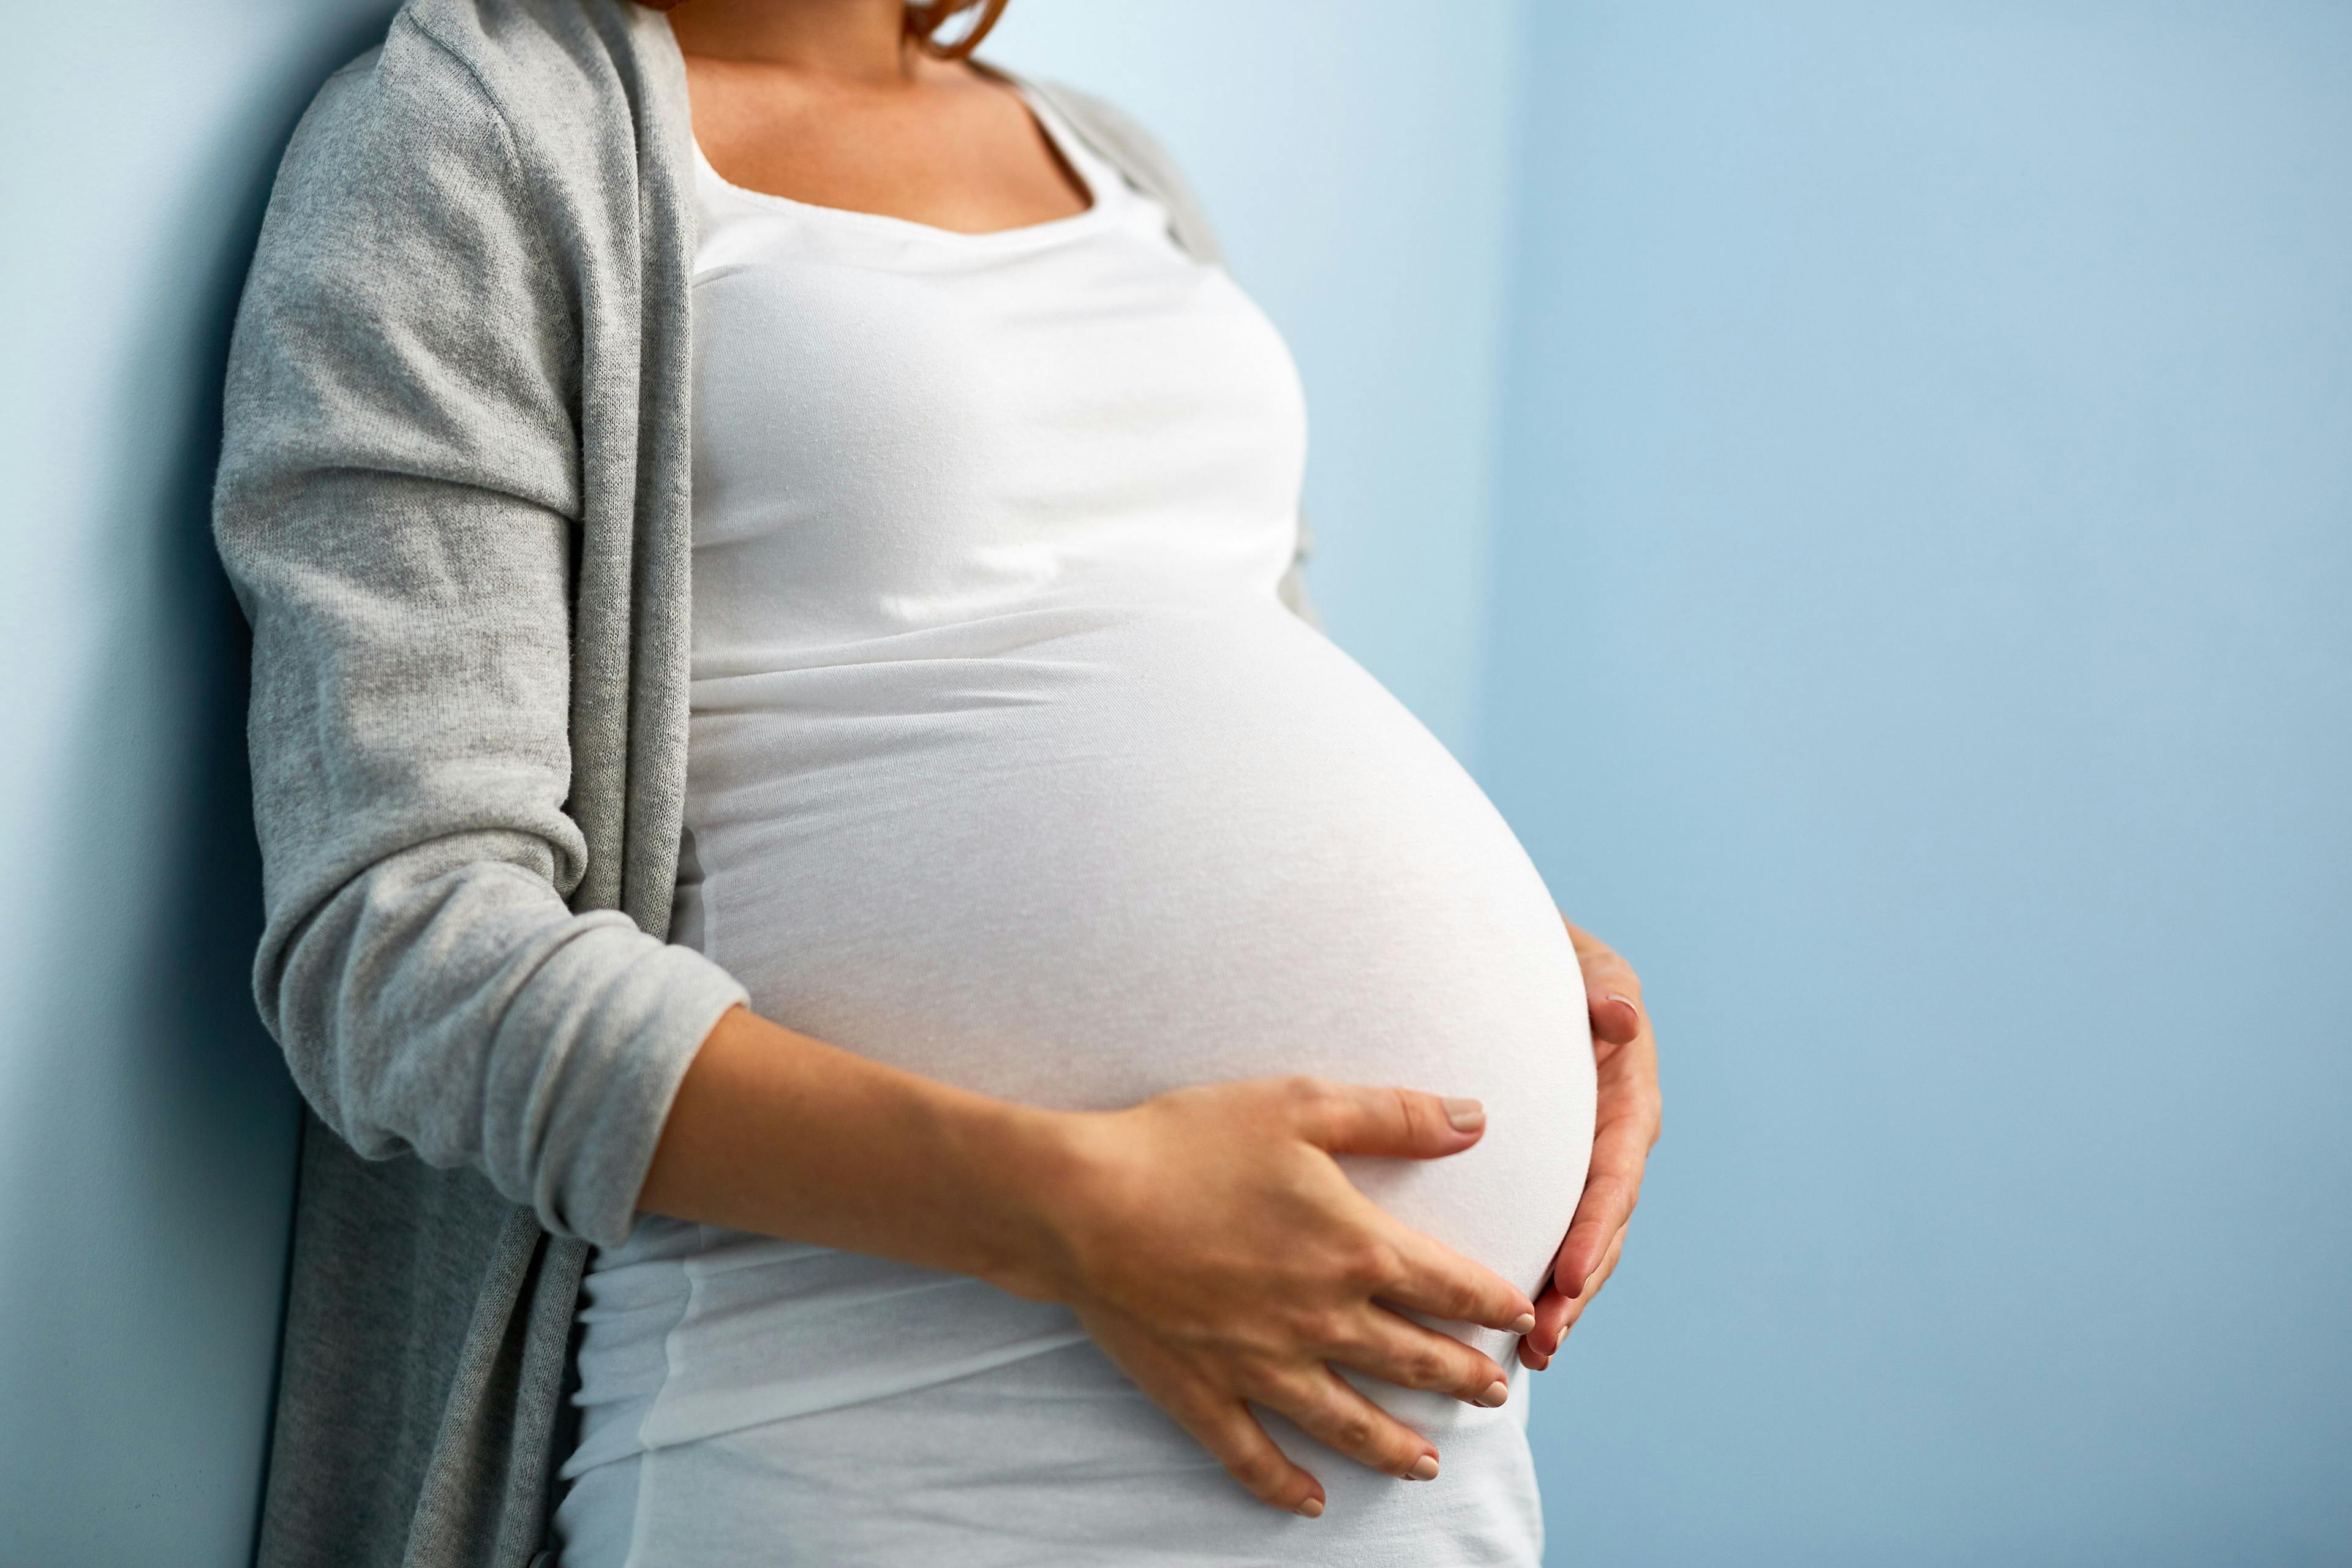 Pregnant person / pressmaster - stock.adobe.com